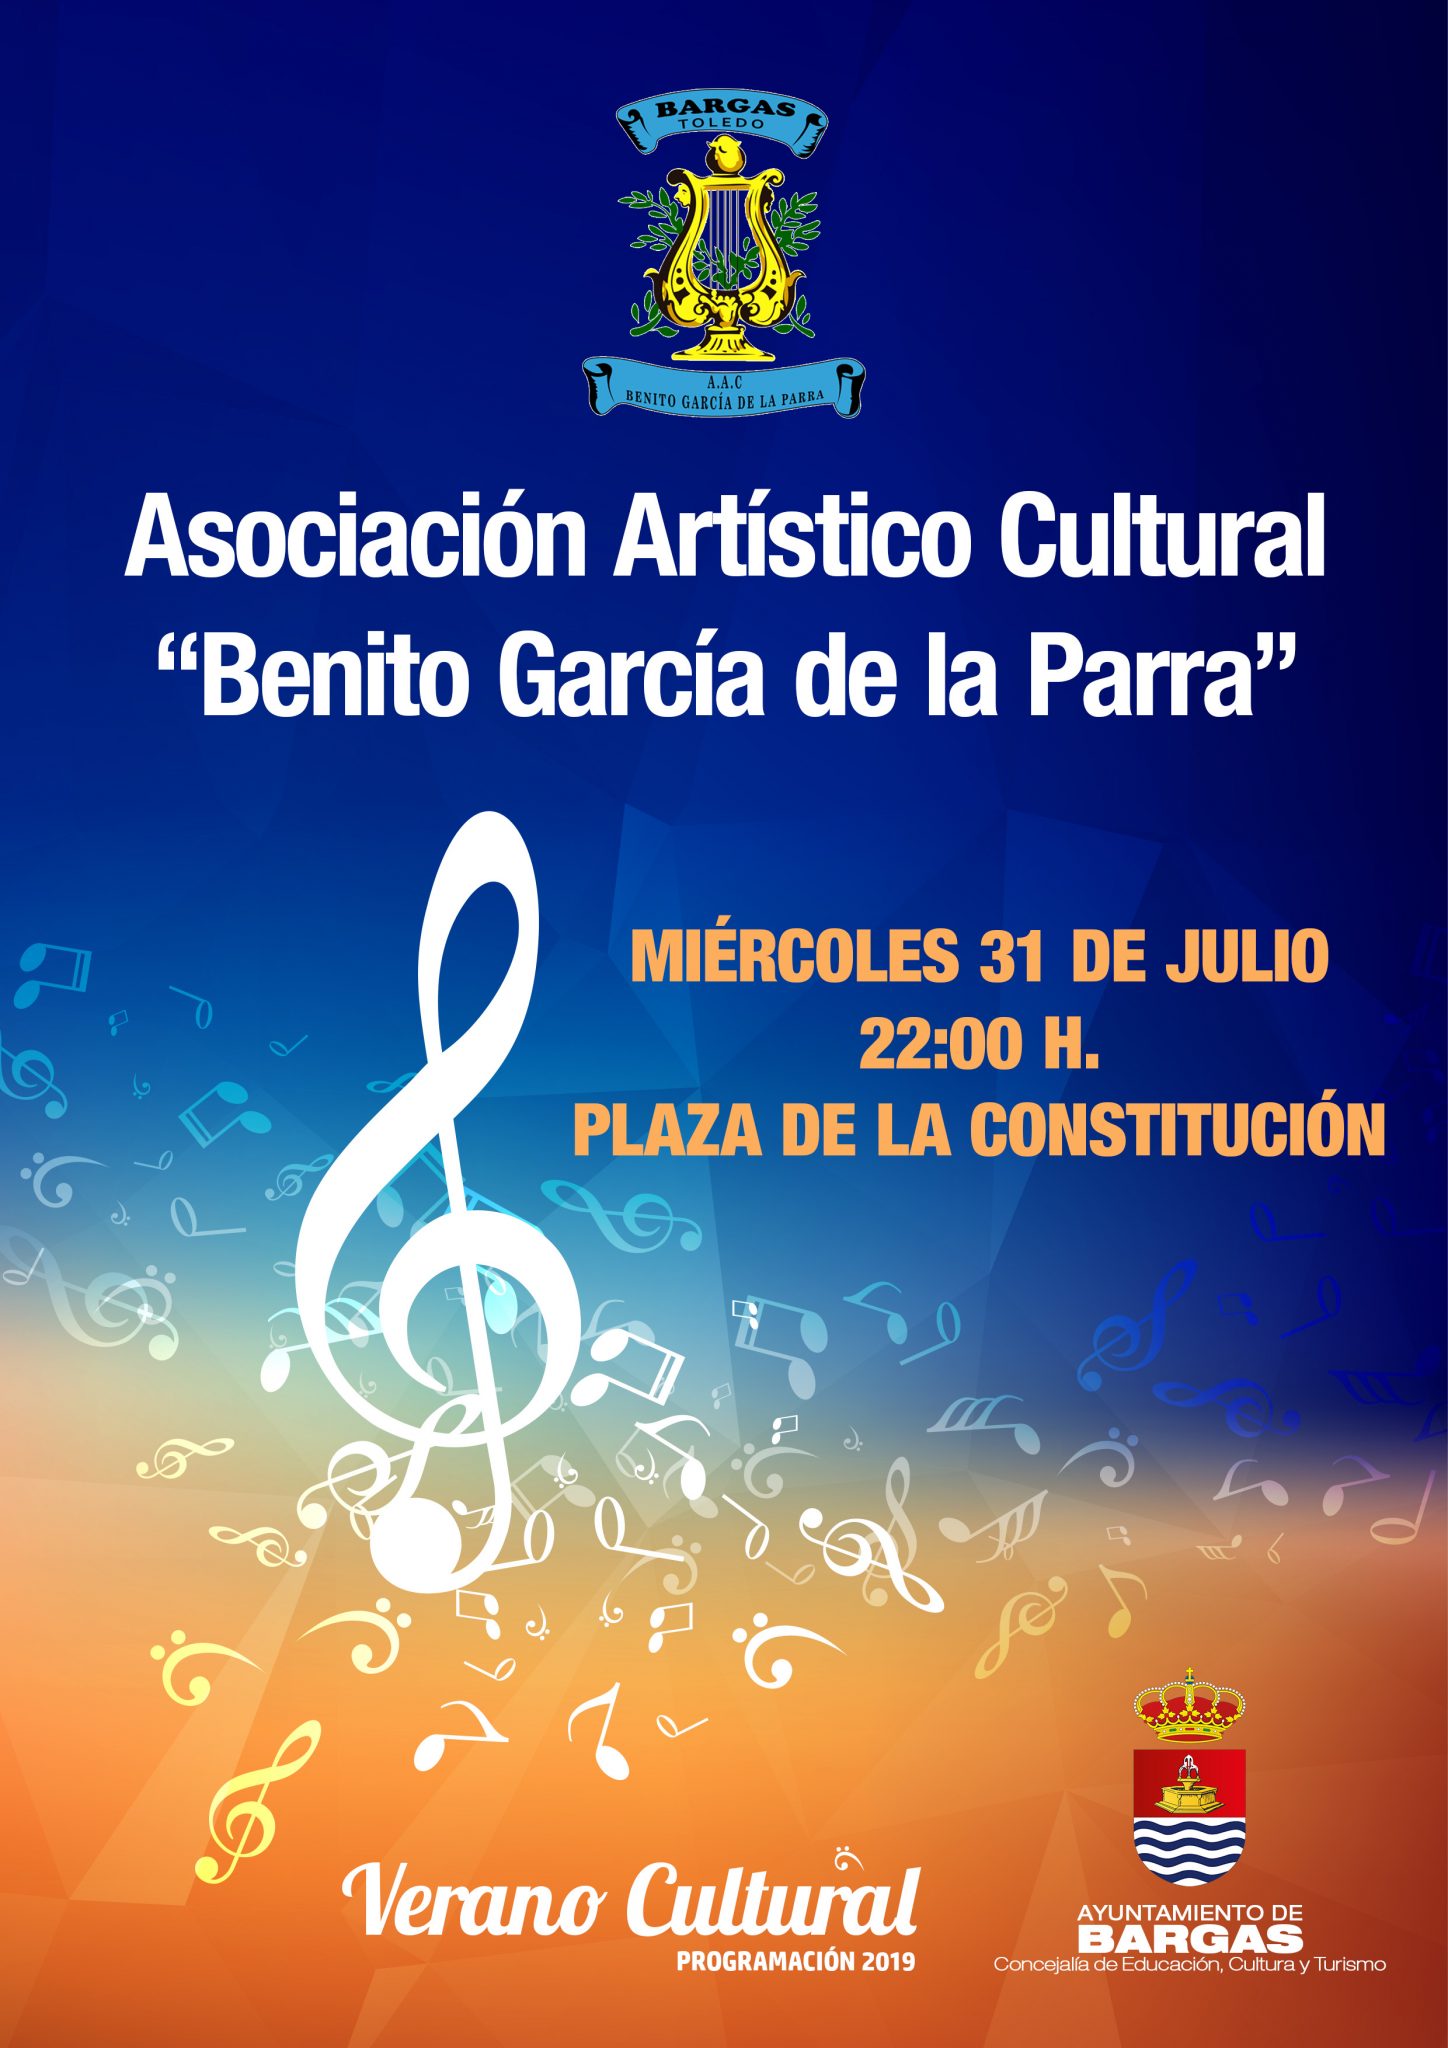 Concierto: A.A.C. «Benito García de la Parra»